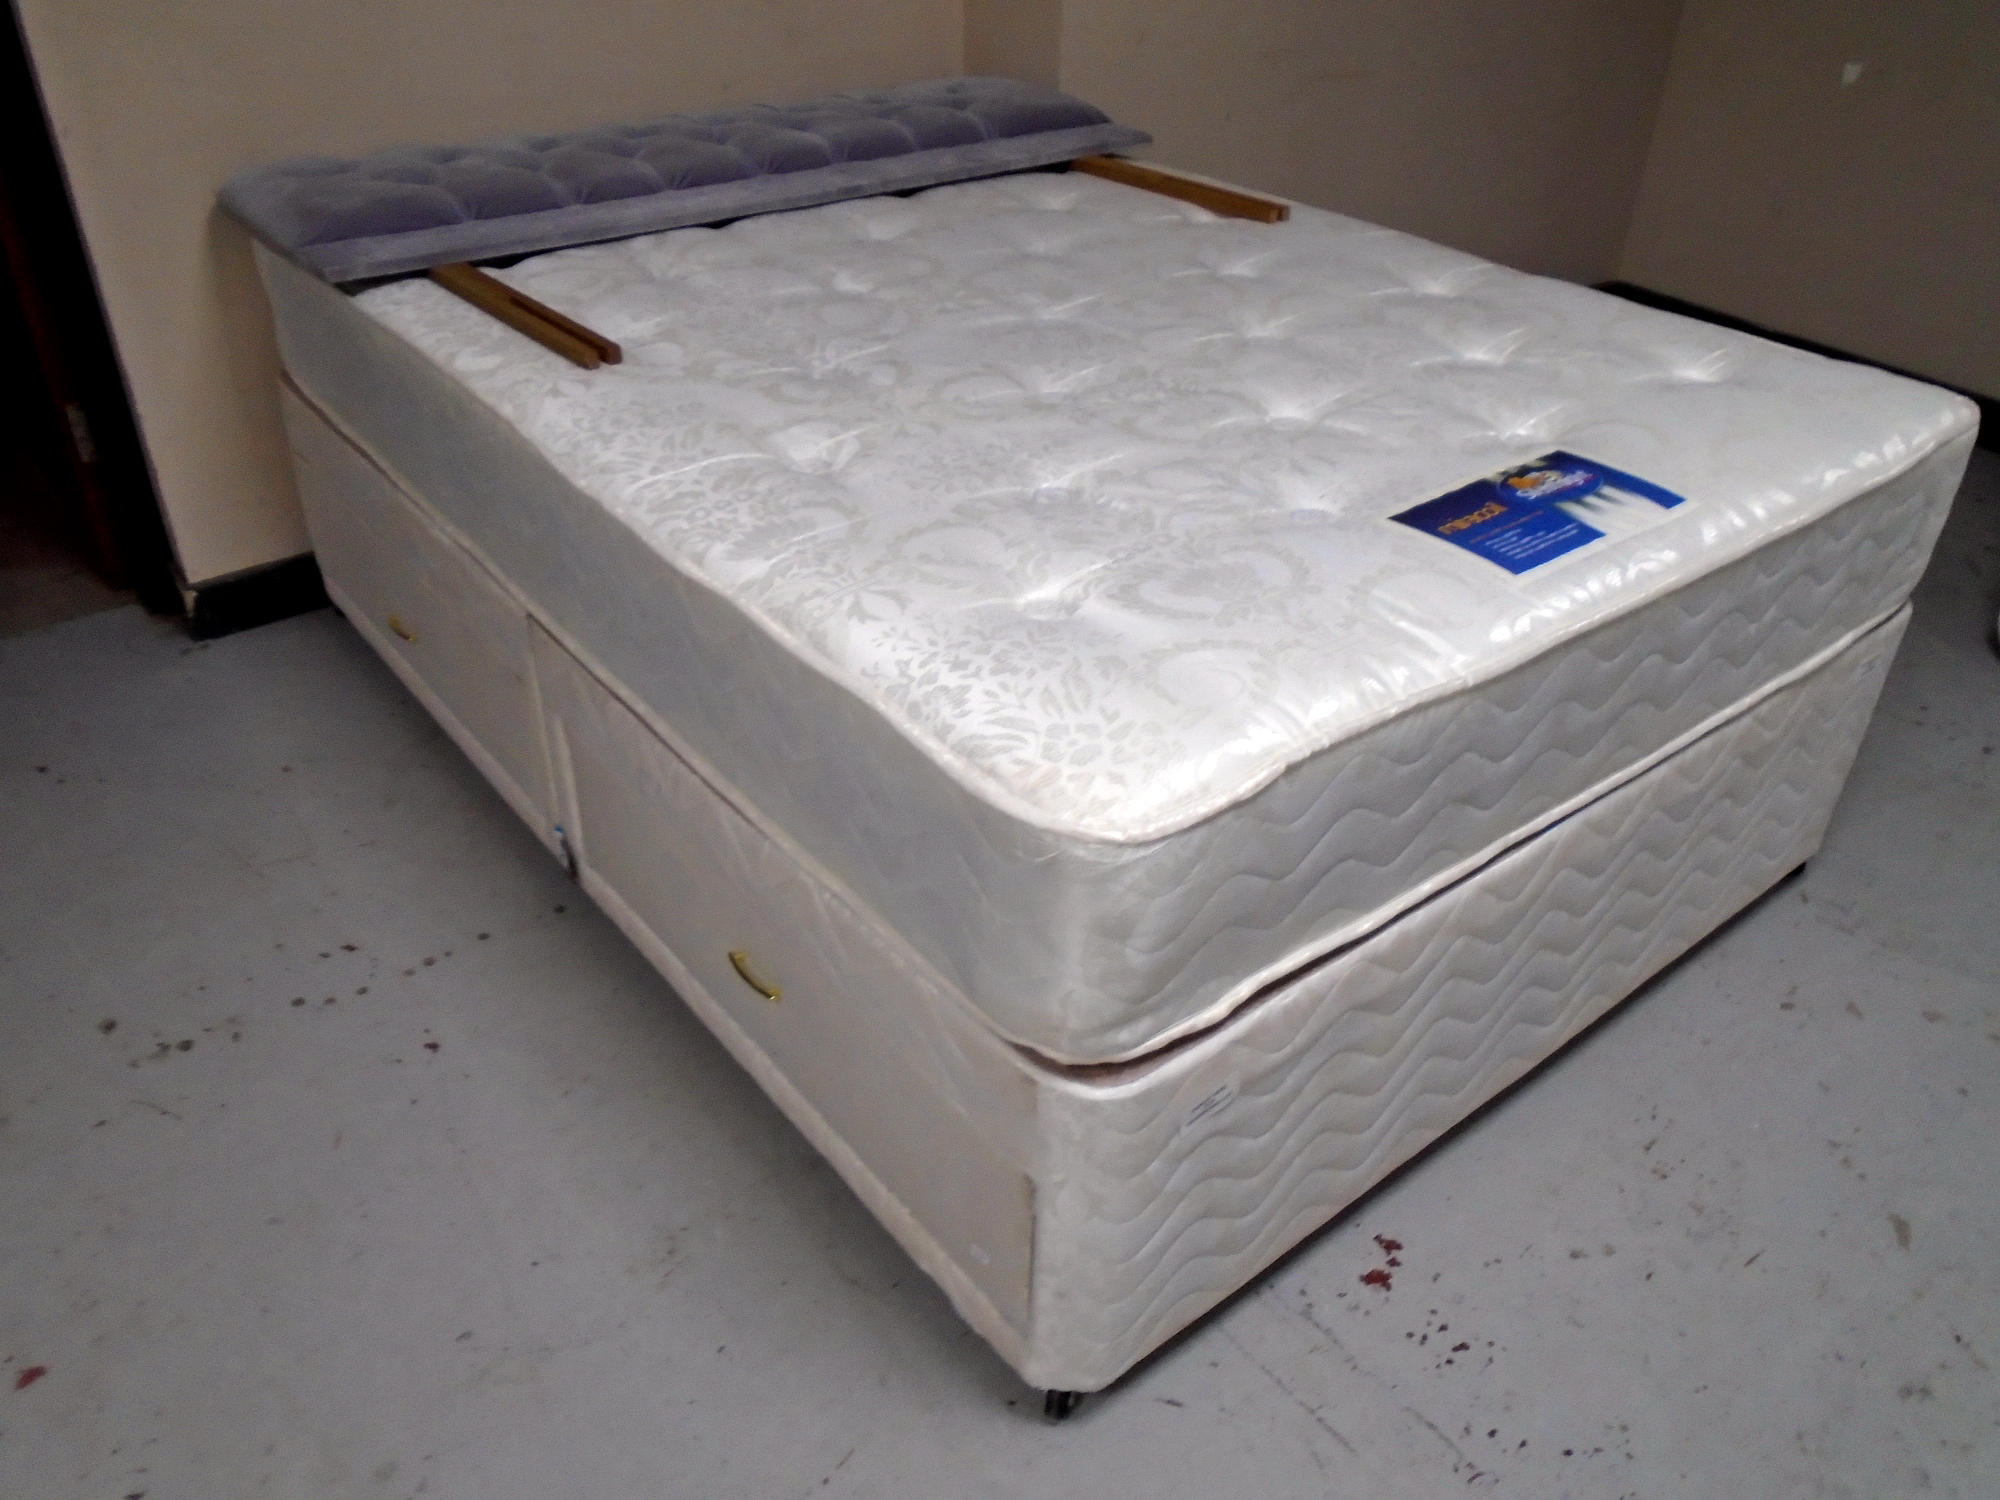 A 4'6" divan set with Silent Night Miracoil mattress.